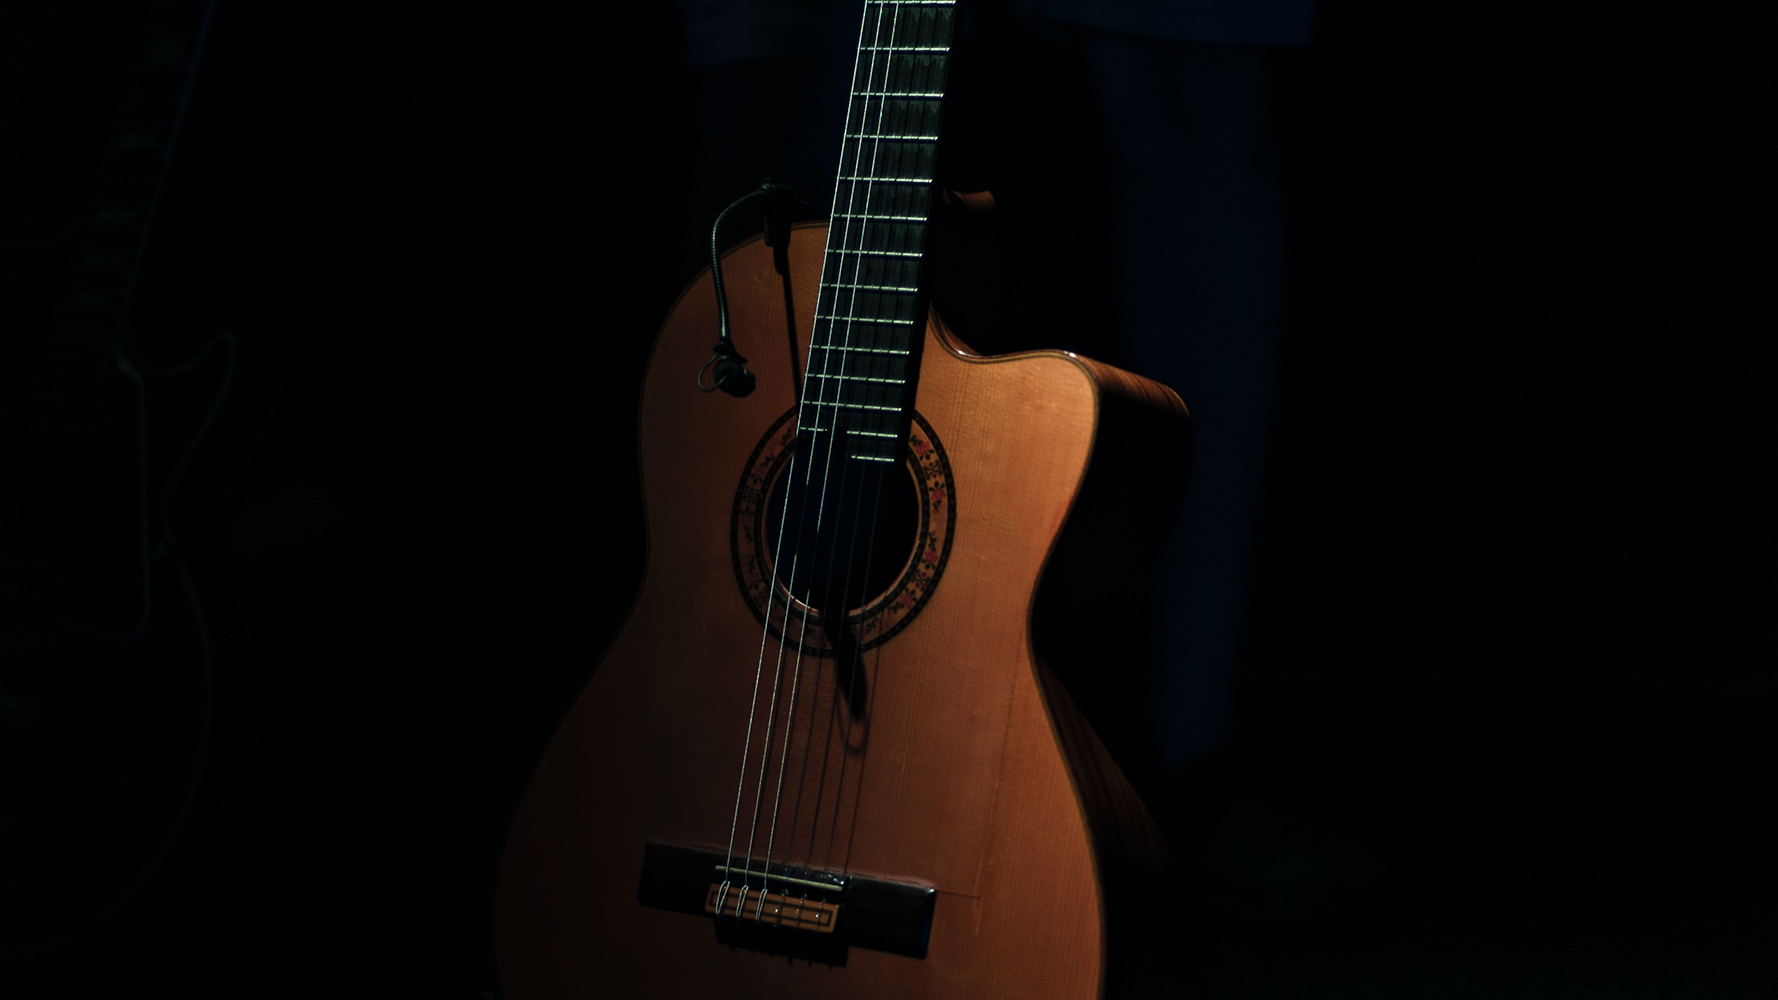 Guitar in dramatic, dark lighting